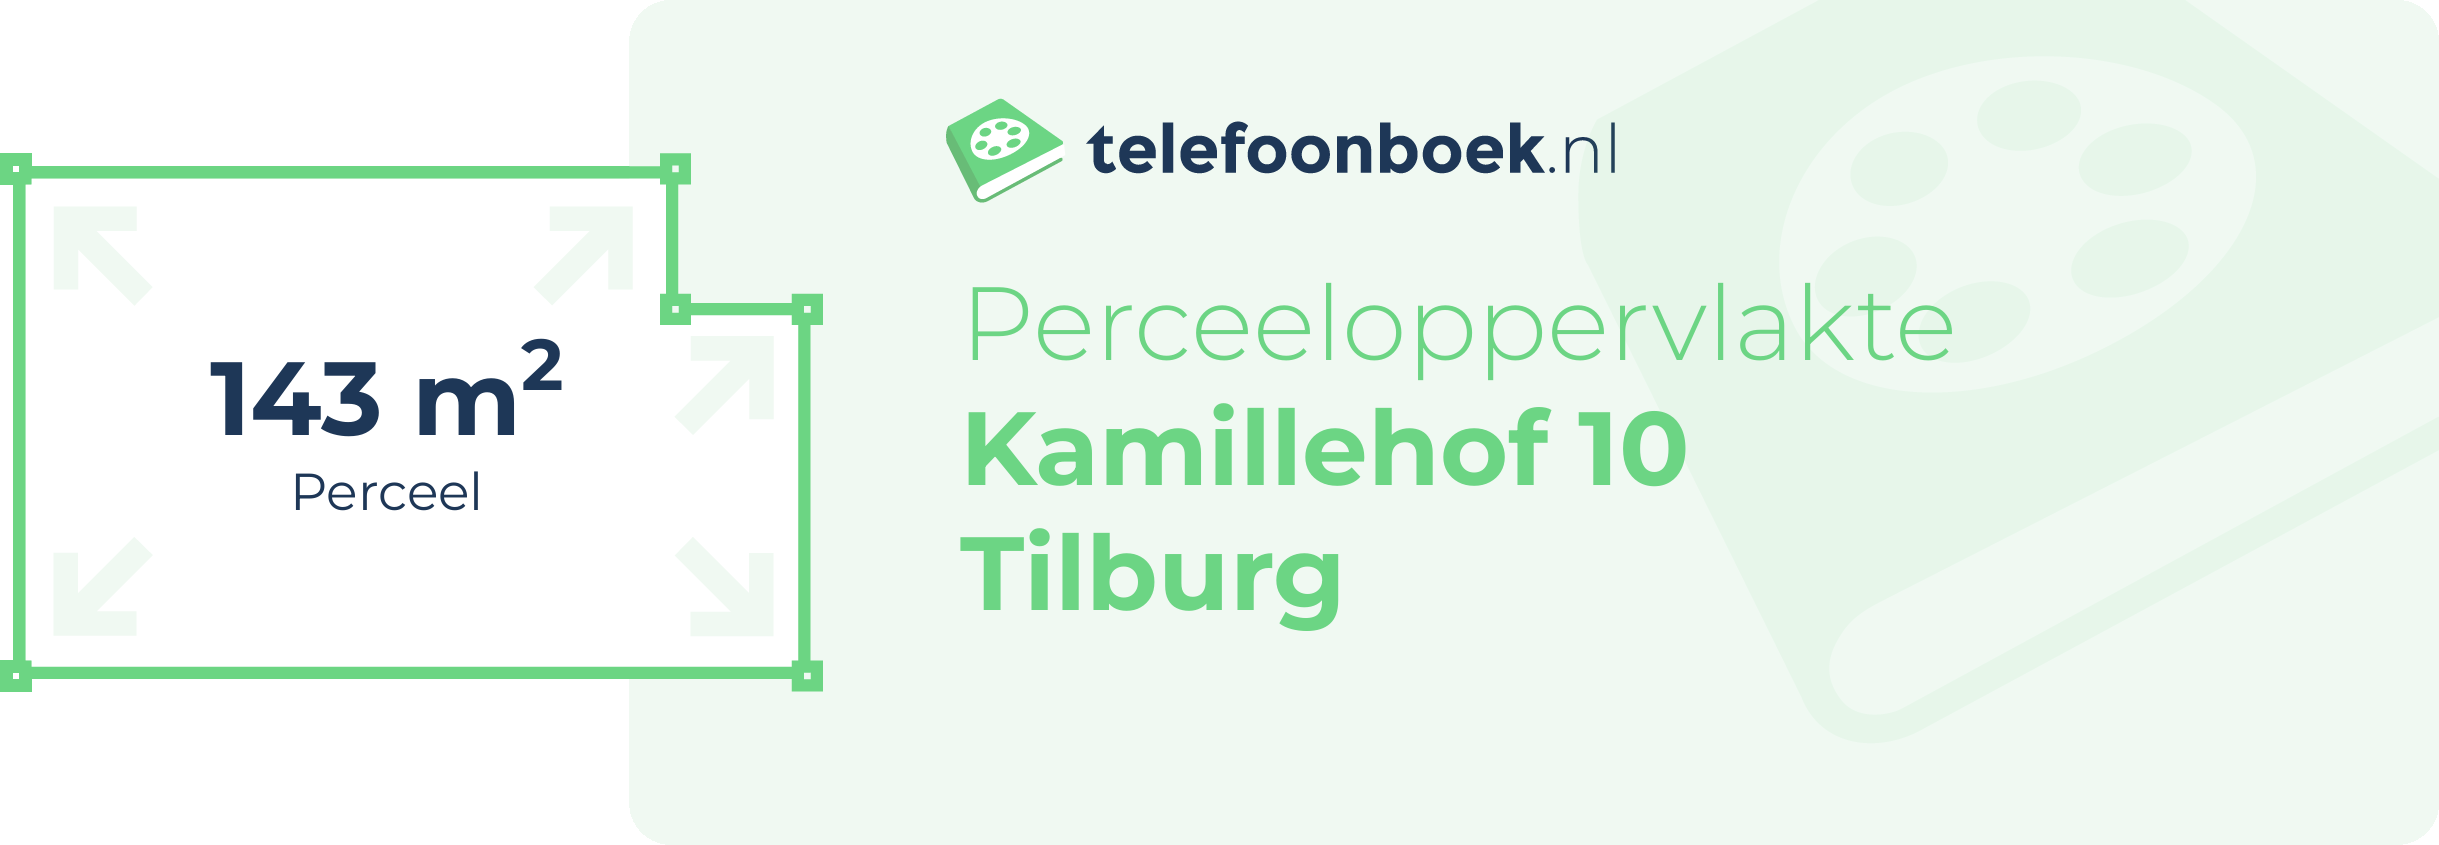 Perceeloppervlakte Kamillehof 10 Tilburg